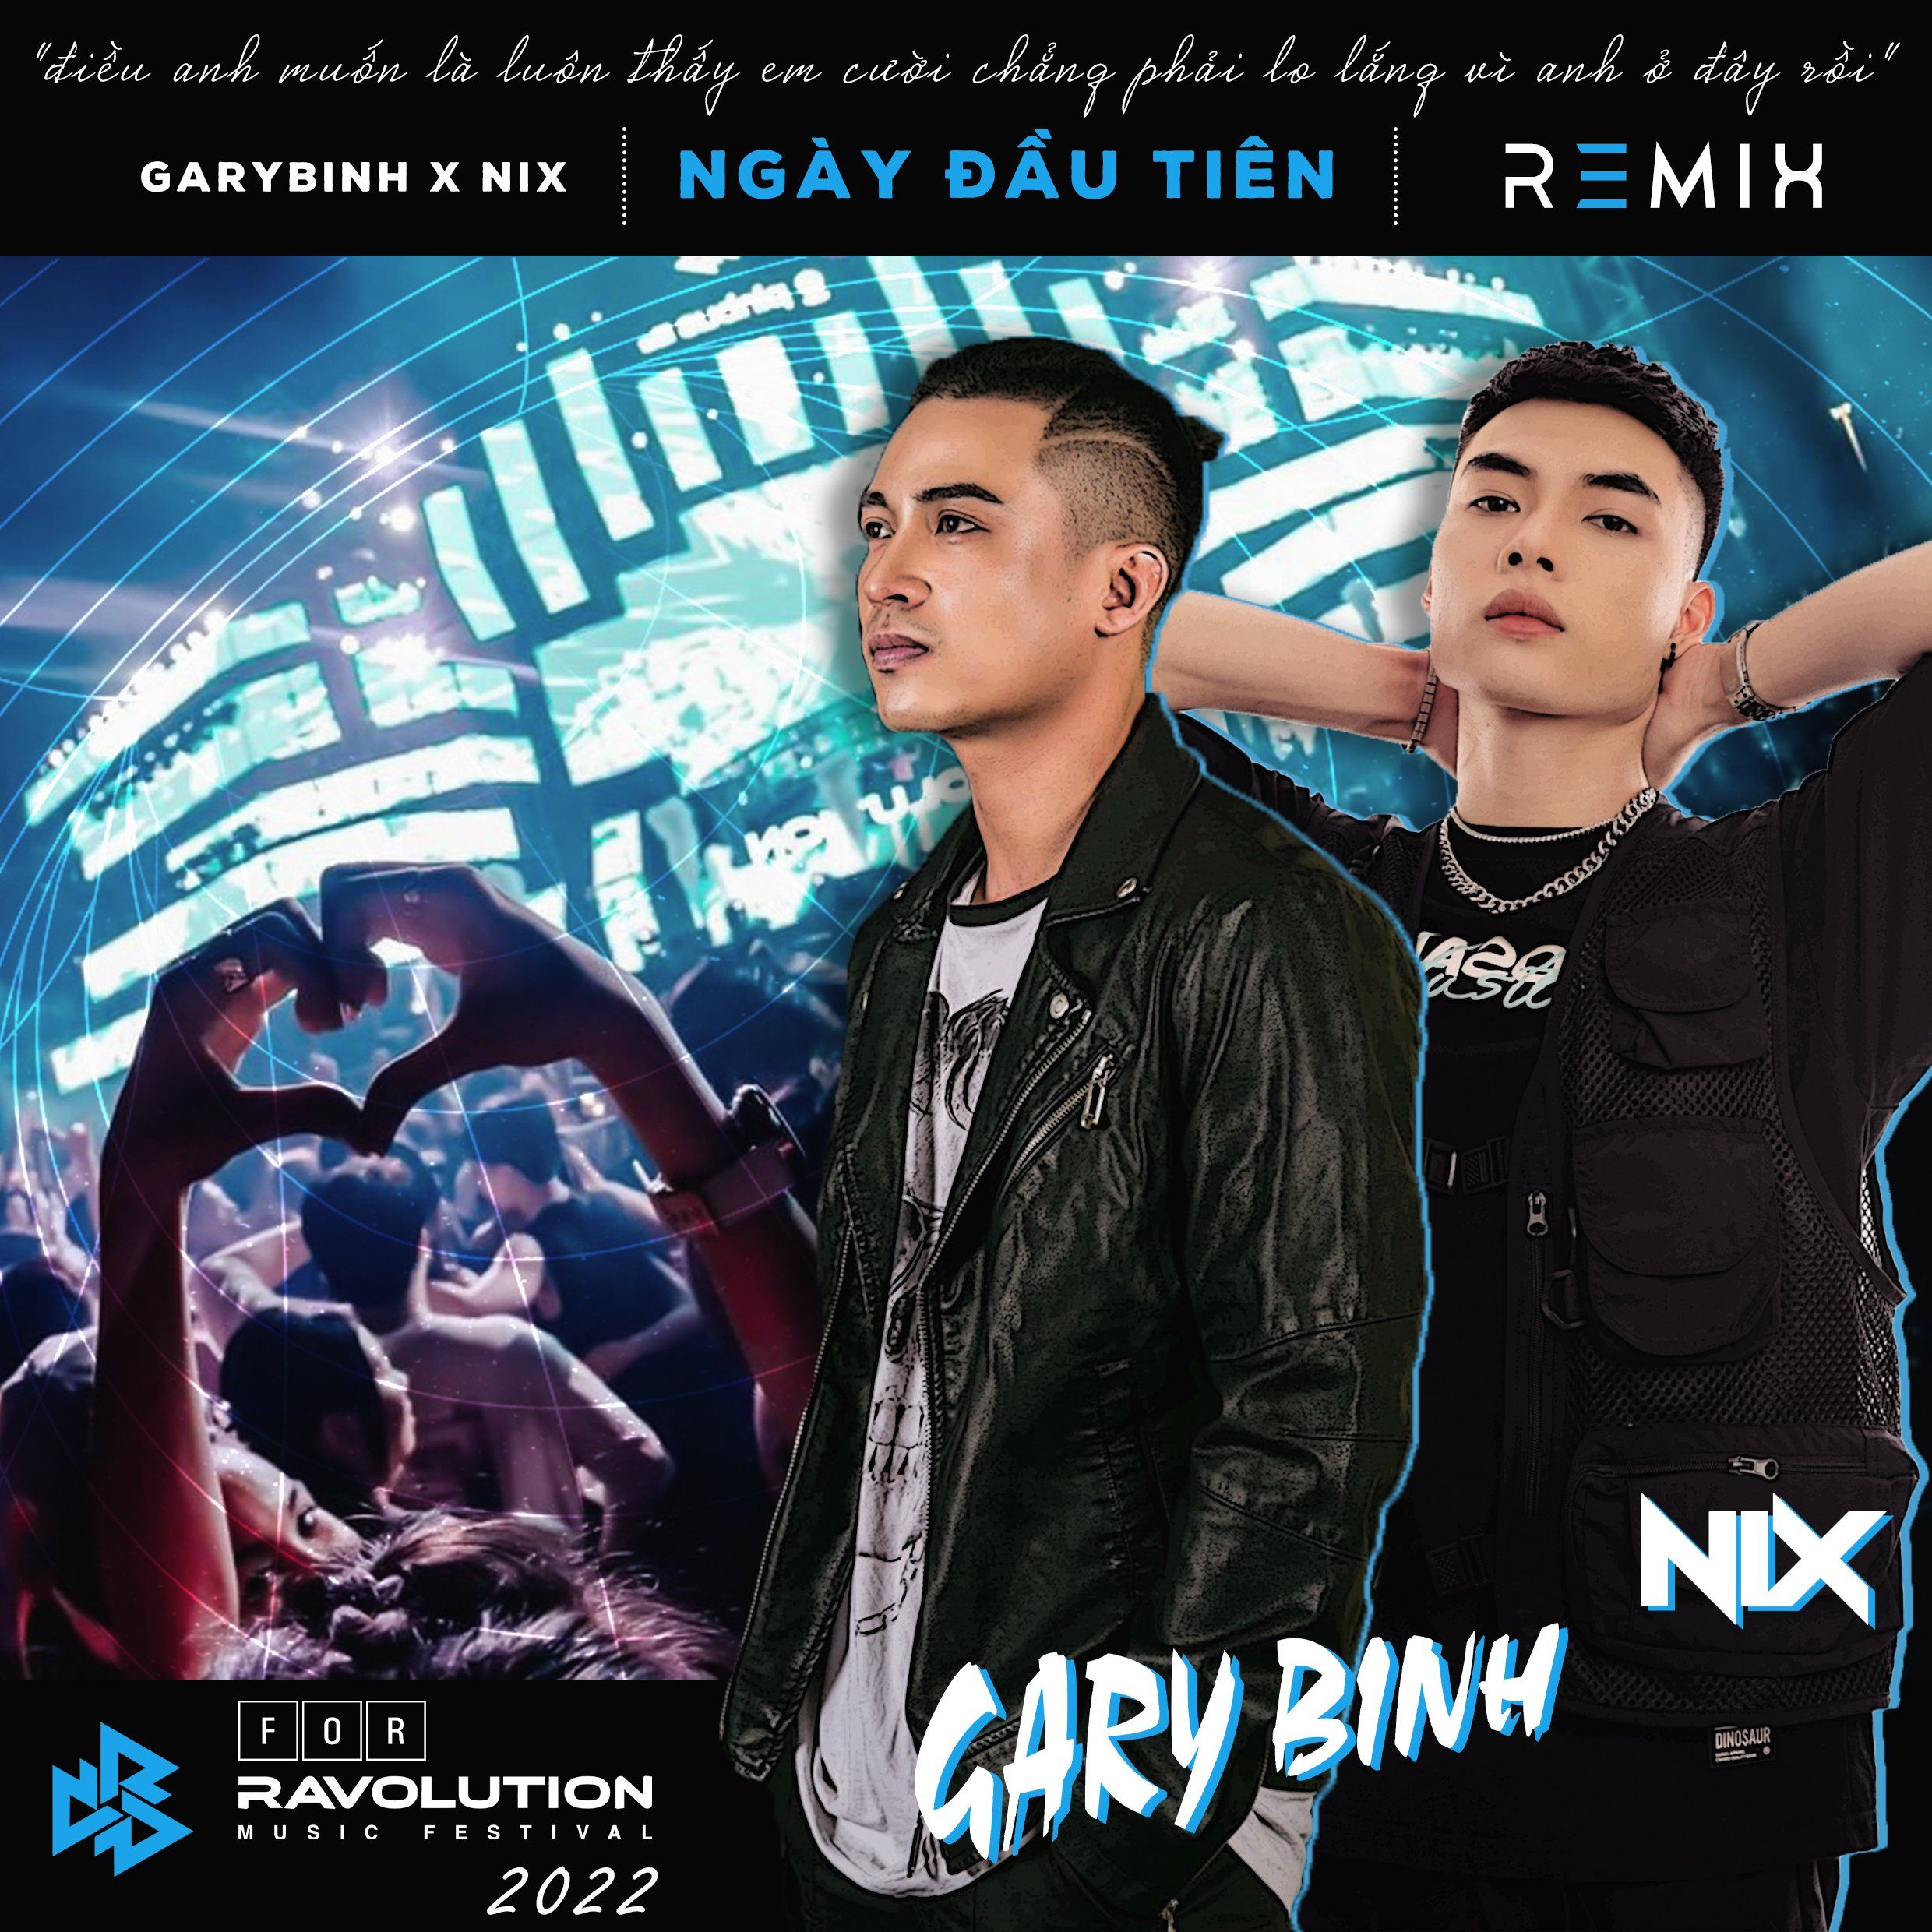 Stiahnuť ▼ Đức Phúc - Ngày Đầu Tiên (Nix x Gary Bình Remix) [Ravolution Music Festival Version]